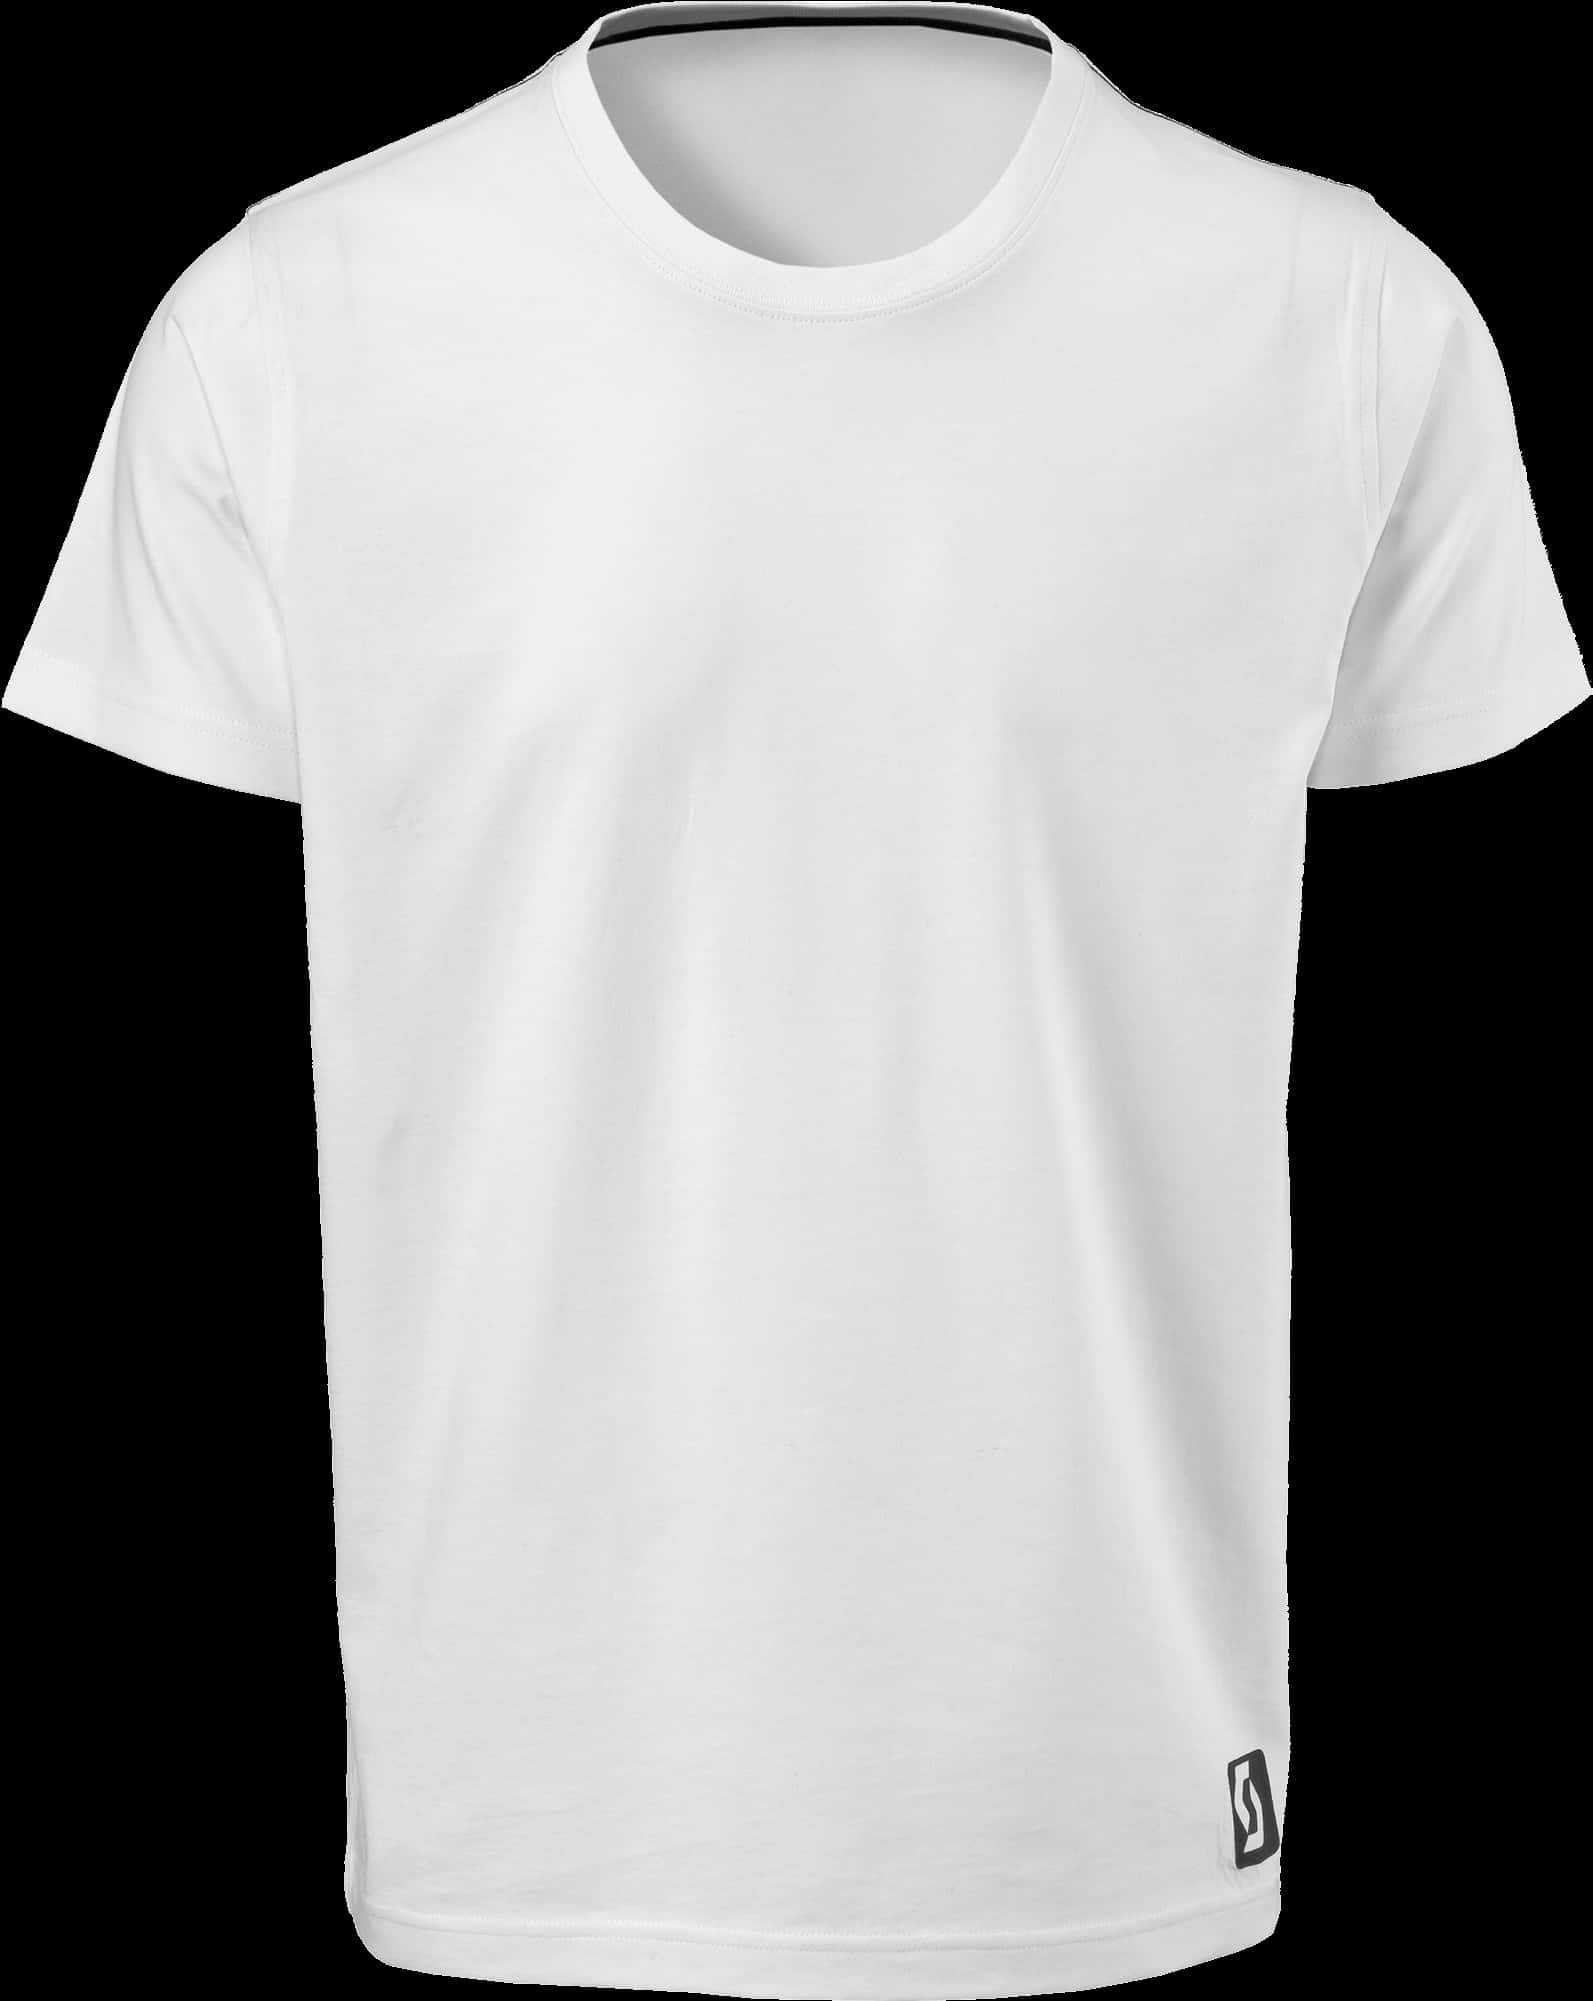 Plain White T Shirt Mockup PNG image